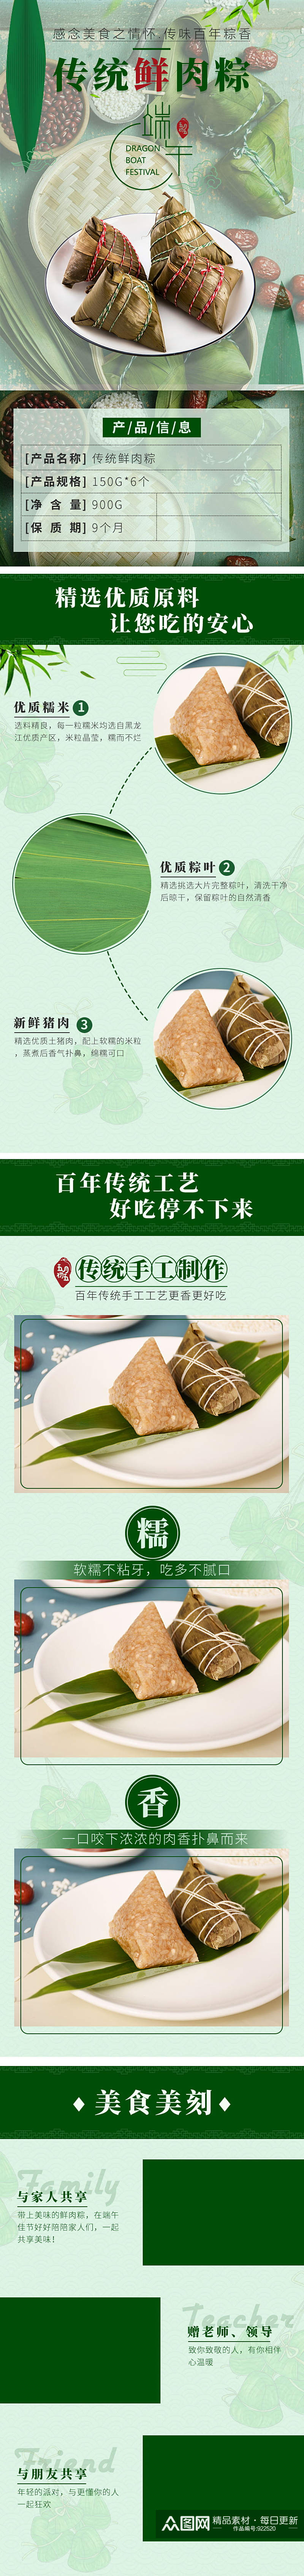 淘宝美食传统肉粽粽子端午节详情页素材